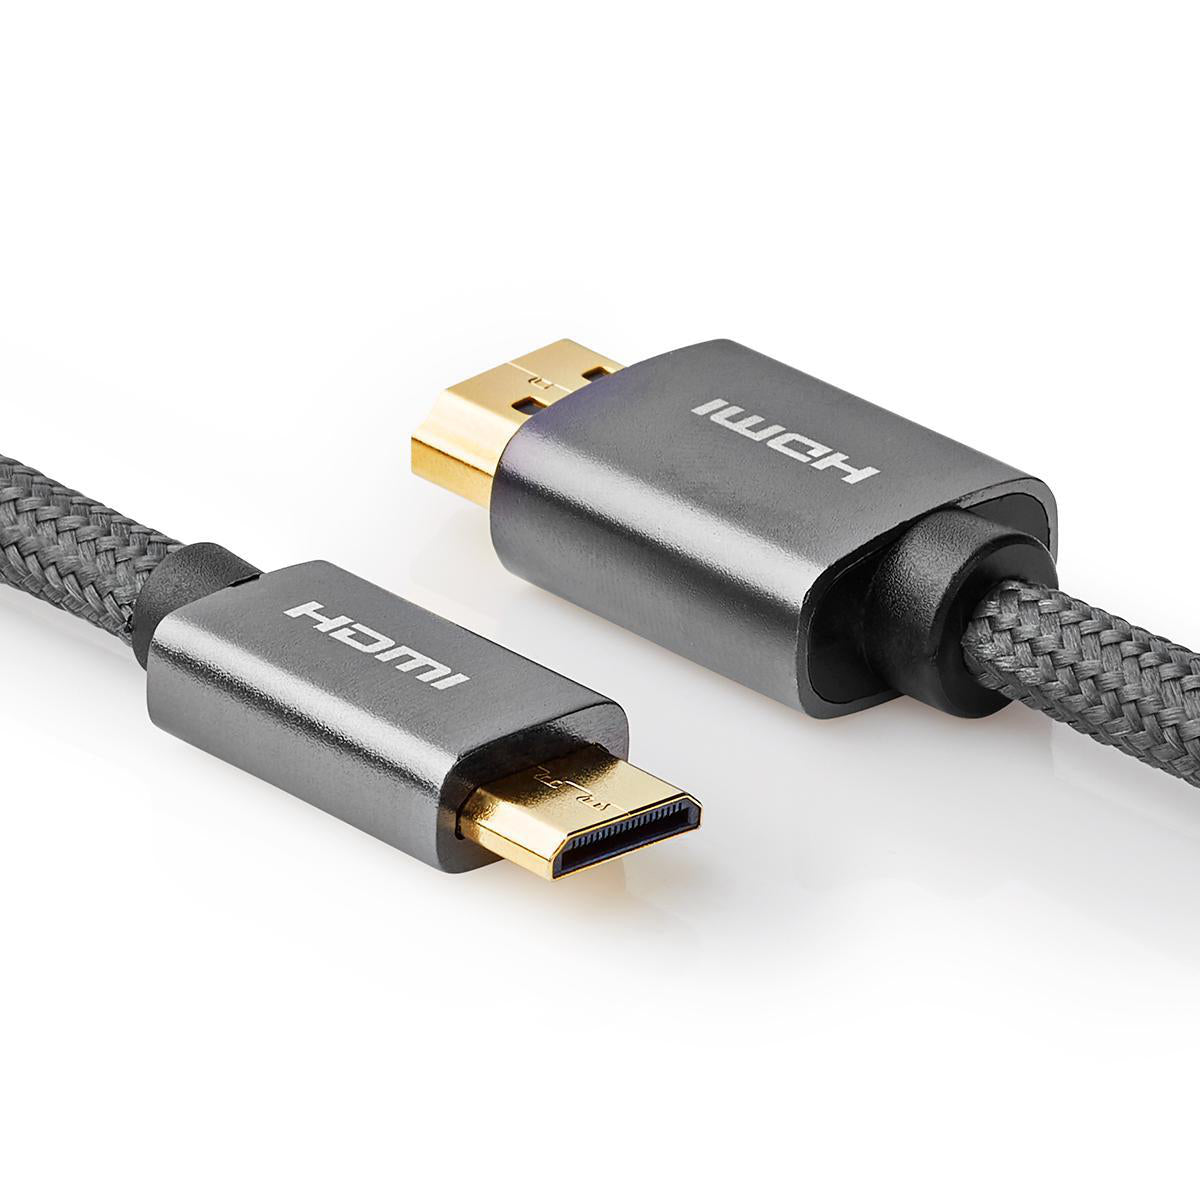 High Speed HDMI ™ Kabel mit Ethernet | HDMI™ Stecker | HDMI™ Mini Stecker | 4K@60Hz | 18 Gbps | 2.00 m | Rund | Baumwolle | Anthrazit / Gun Metal Grau | Verpackung mit Sichtfenster